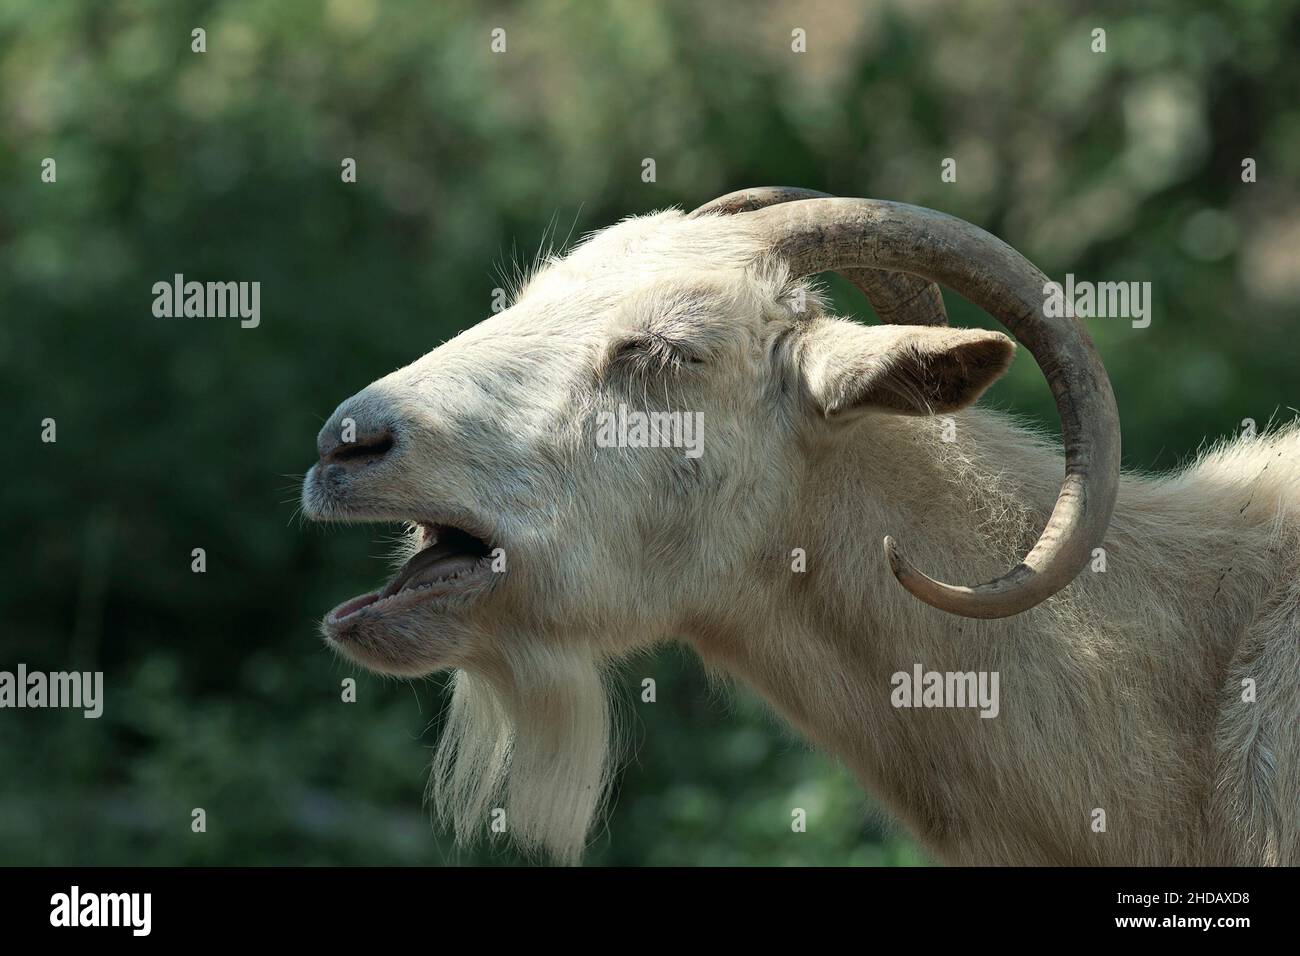 retrato de una cabra enojada sobre el fondo verde fuera del foco Foto de stock